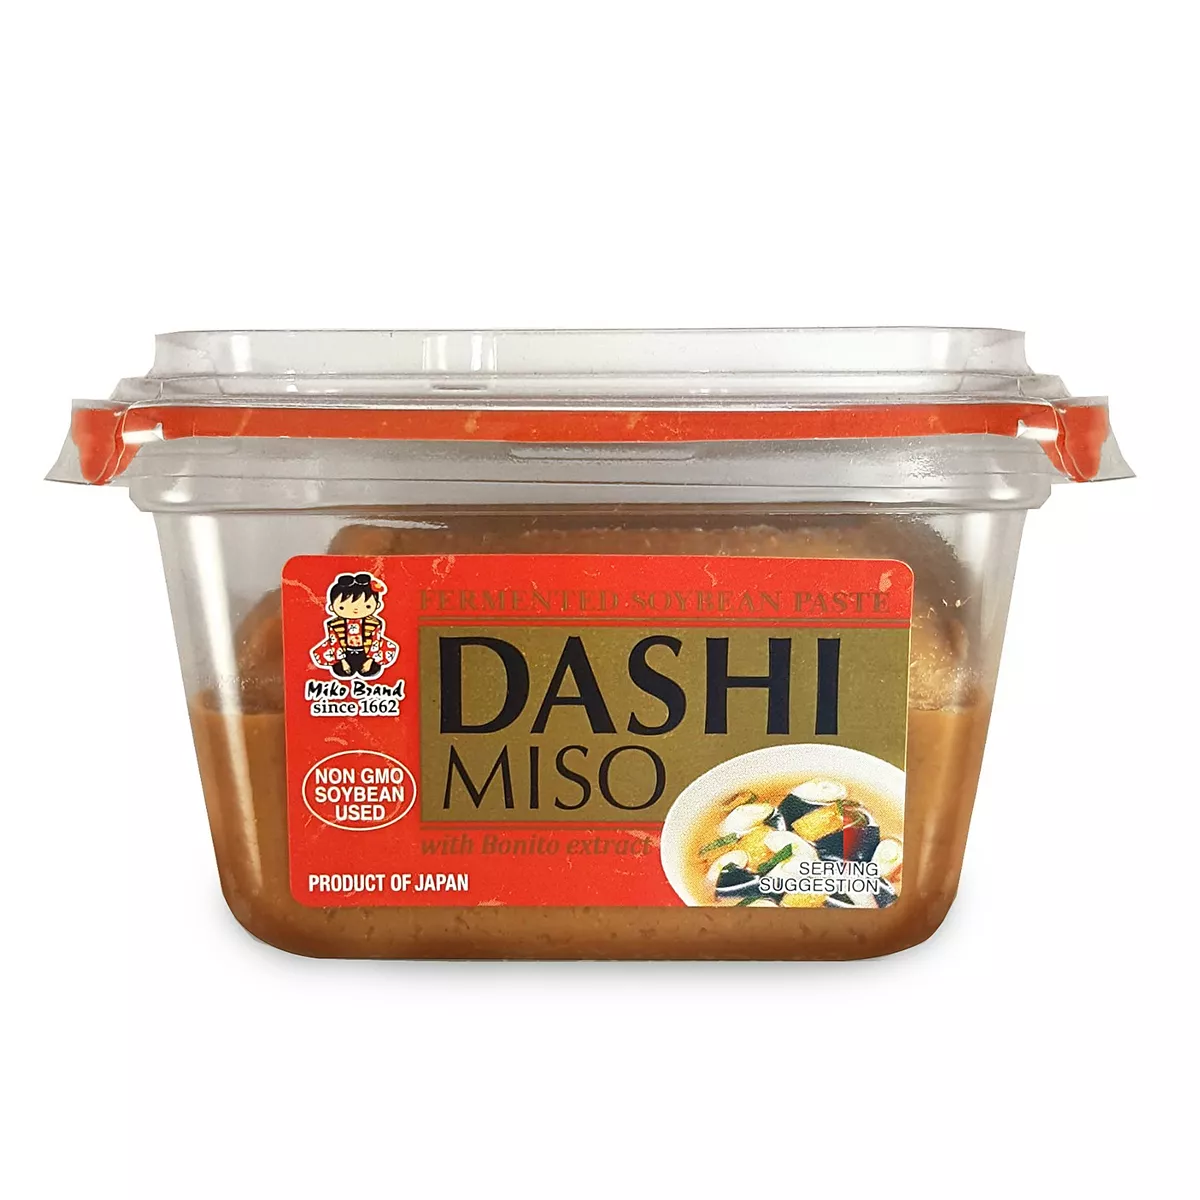 Pasta miso Dashi MIKO BRAND 300g, [],asianfood.ro